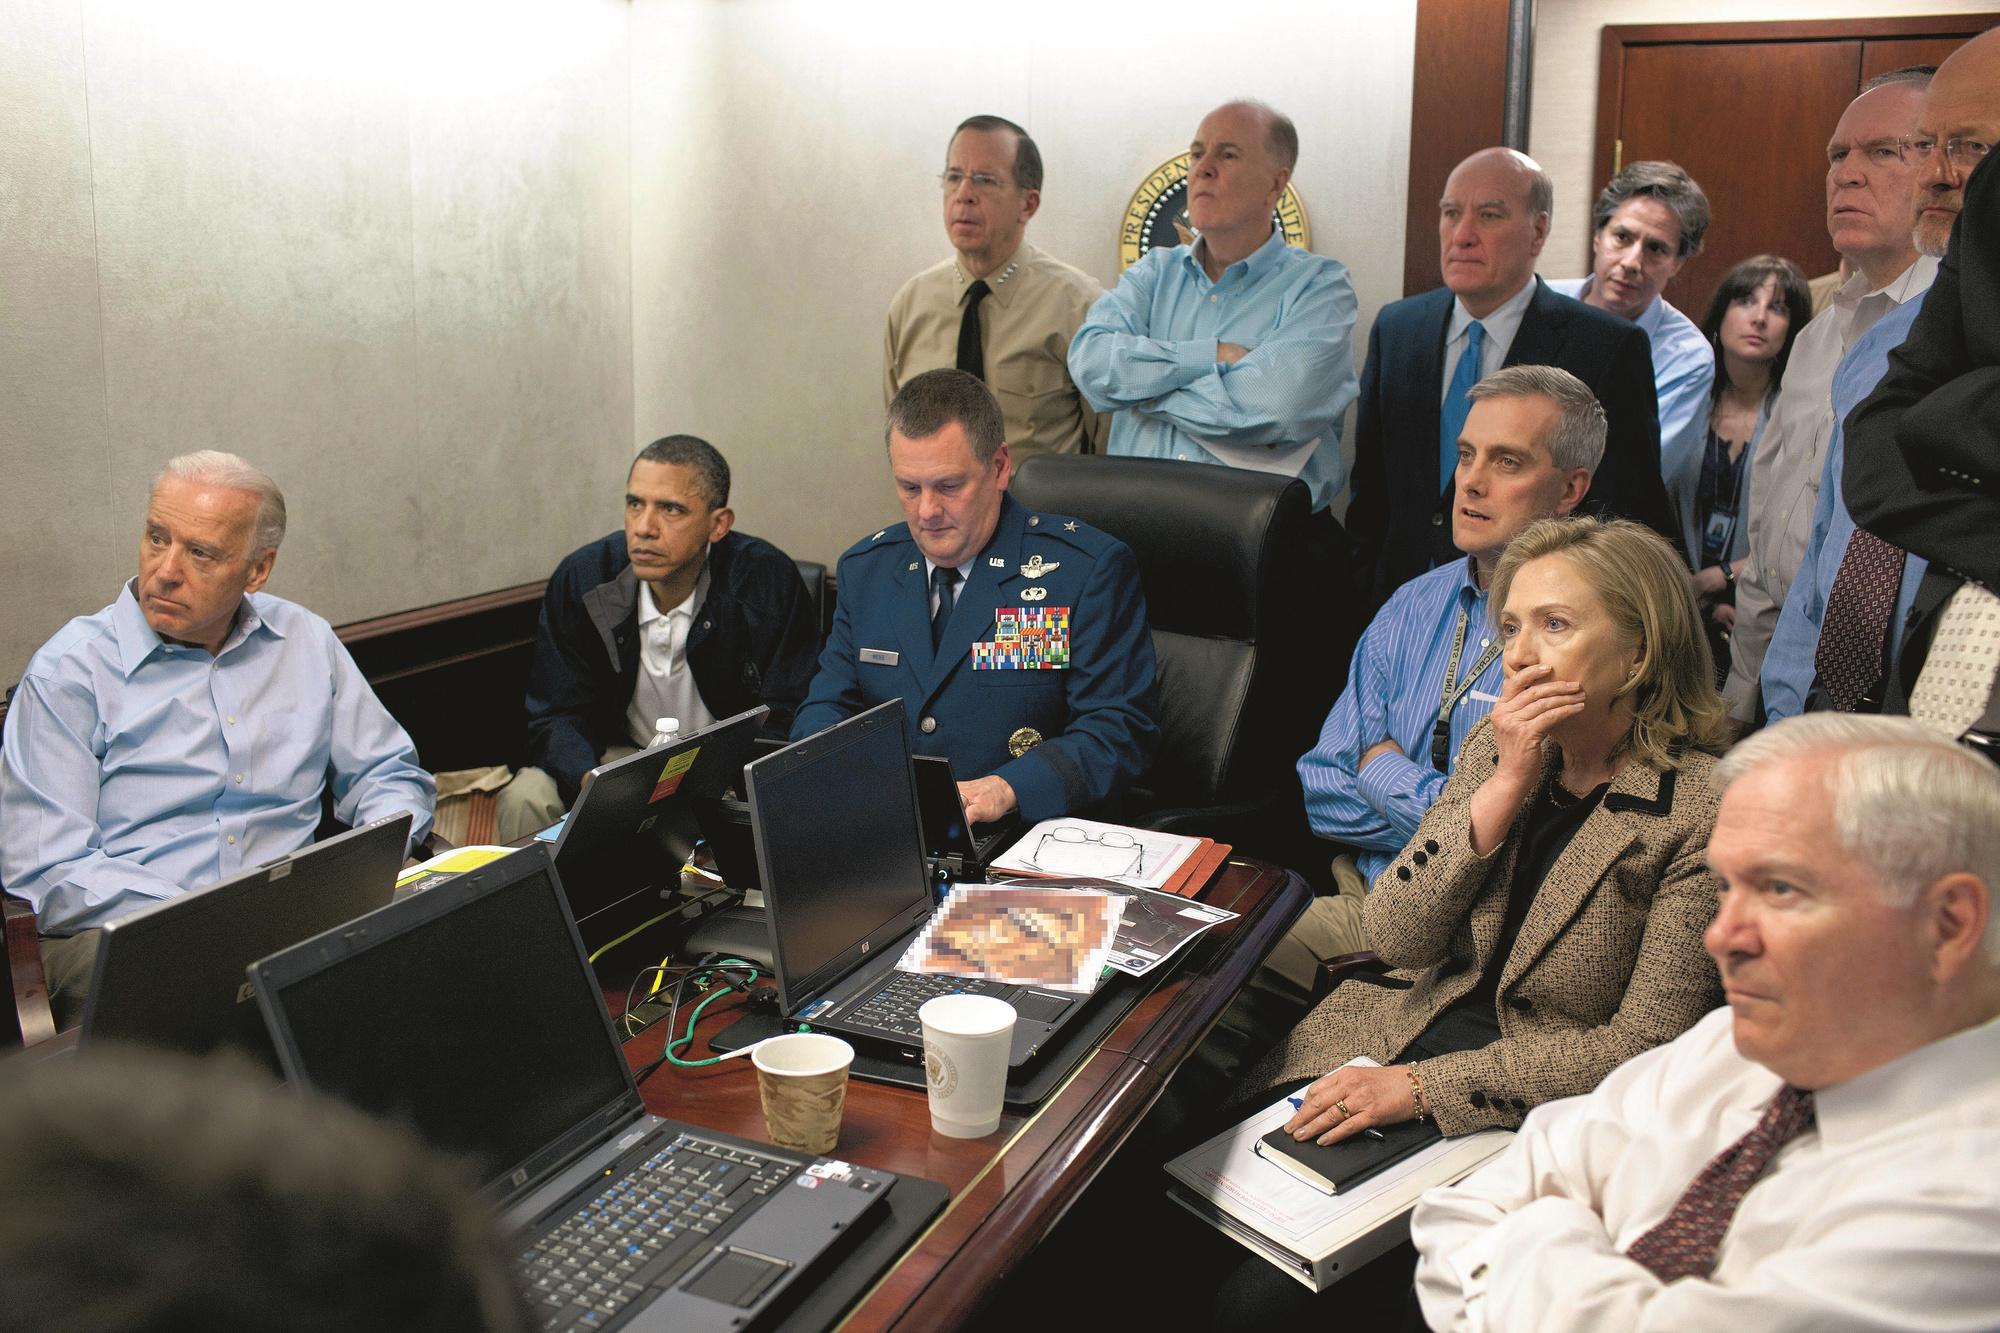 Le 2 mai 2011, un commando des Navy Seals tue le chef d'Al-Qaeda Oussama Ben Laden dans une maison au Pakistan : le seul moment peutêtre où le président Obama n'a pas été critiqué par les républicains.